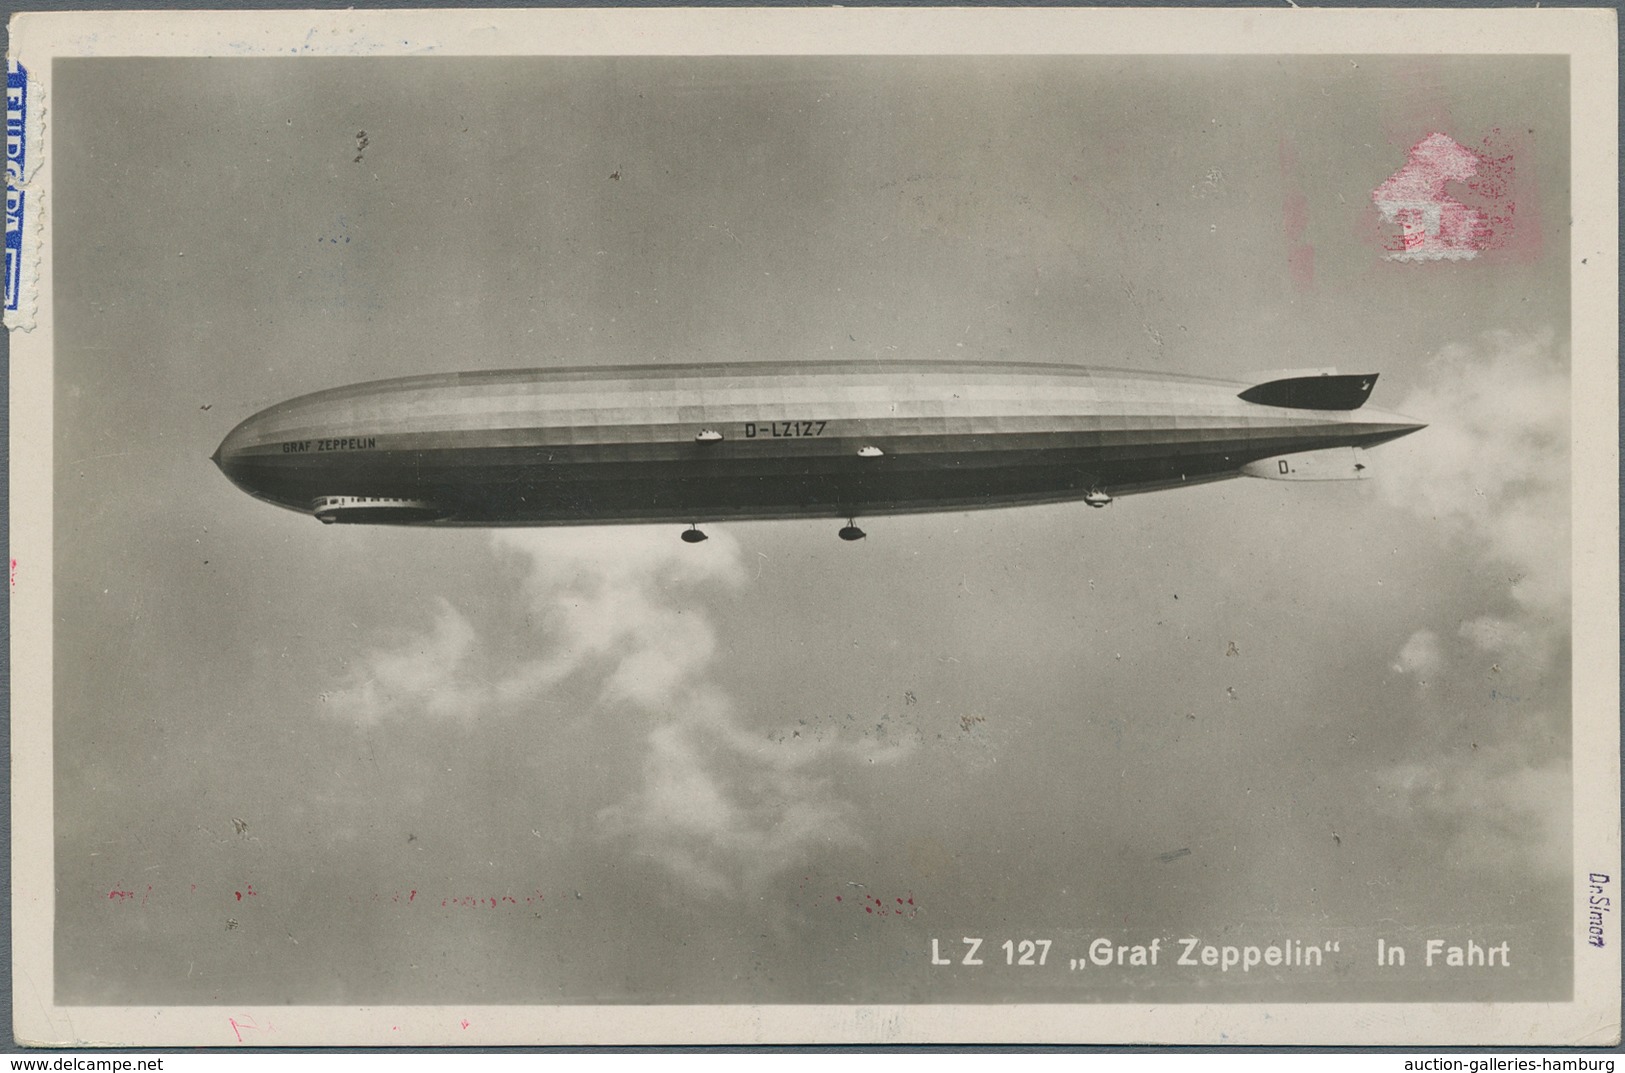 Zeppelinpost Deutschland: 1929, Attempted America Trip/Round The World Trip, Zeppelin Ppc Franked Wi - Luft- Und Zeppelinpost